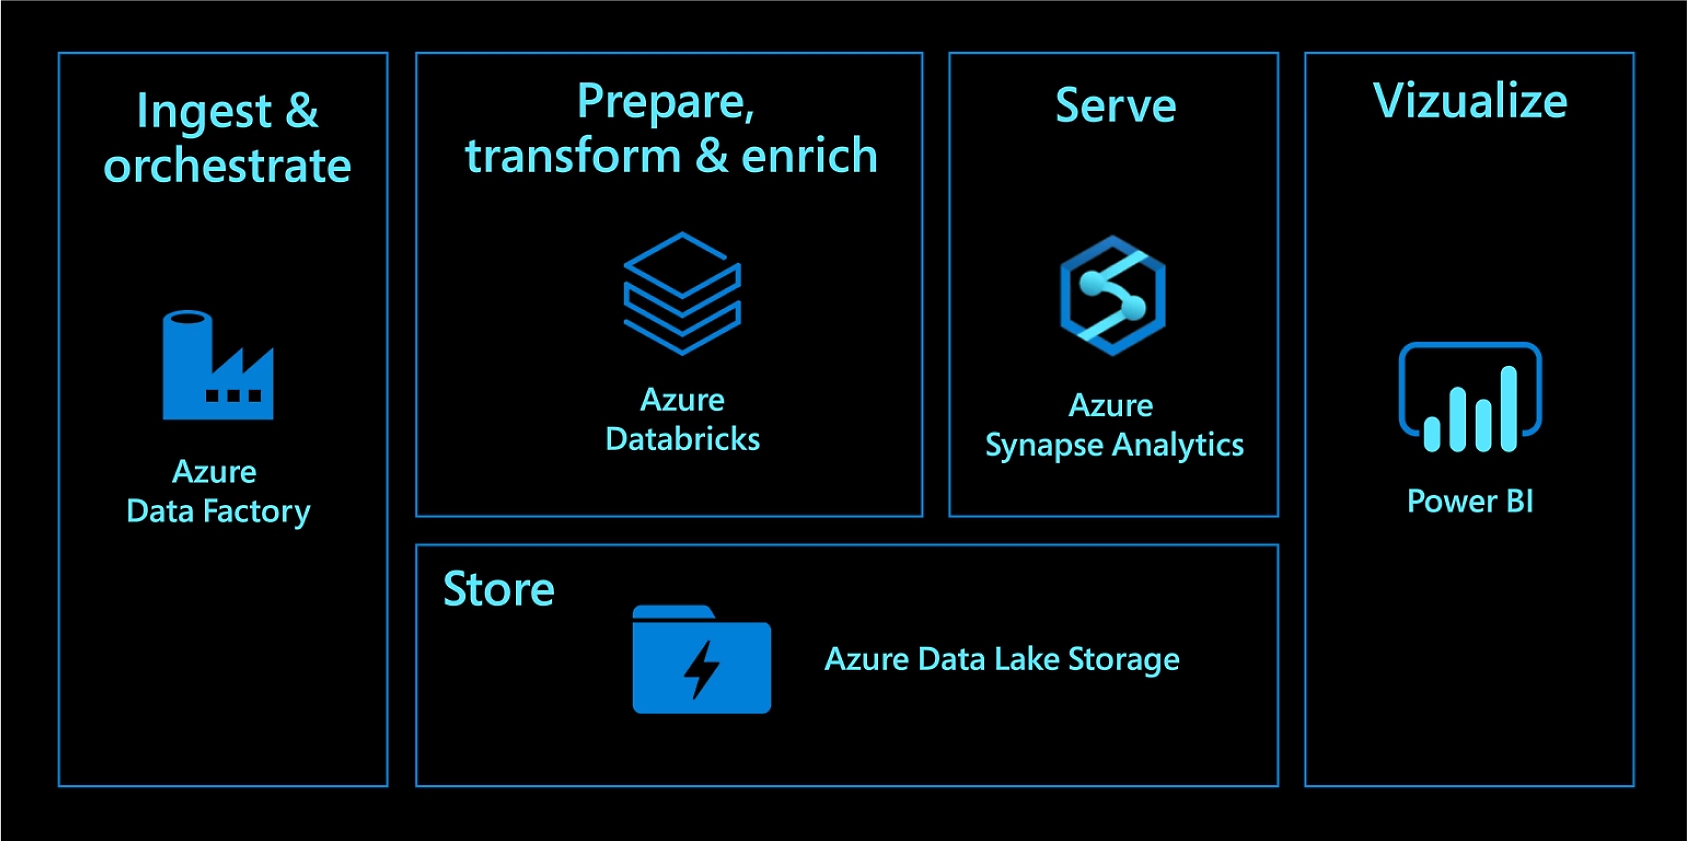 Azure Data Factory で取り込みと調整を行います。Azure Databricks で準備、変換、エンリッチを行います。Azure Synapse Analytics でサービスを提供します。Azure Data Lake Storage で保存します。Power BI で視覚化します。